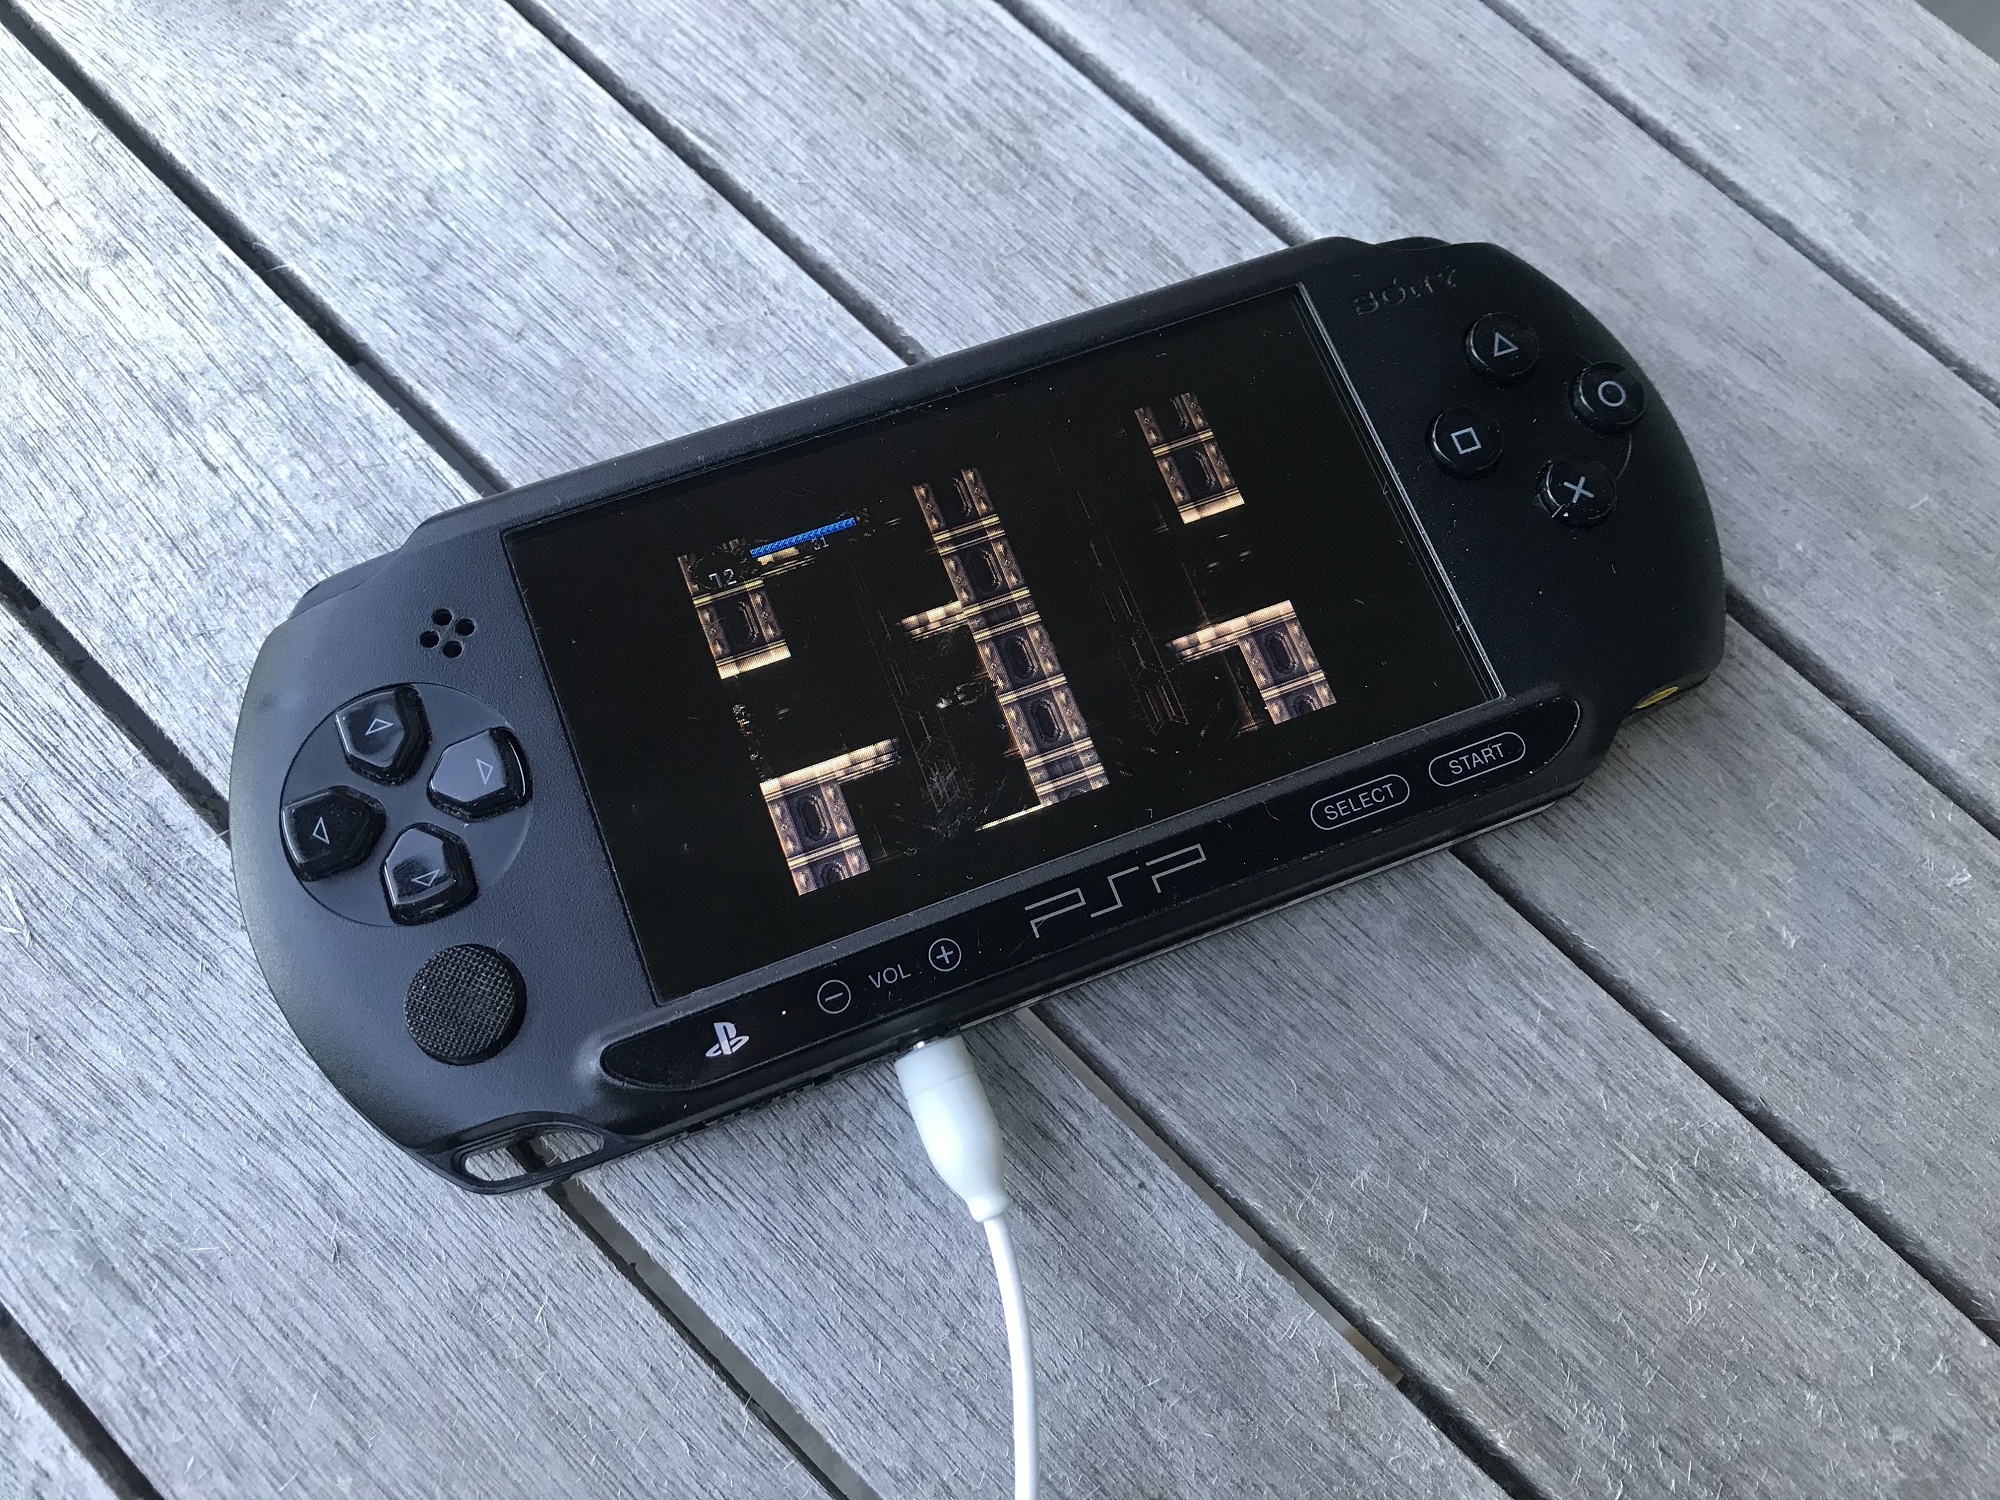 Hængsel jordskælv sukker Playstation Portable (PSP) softmod - Dreamcast.nu